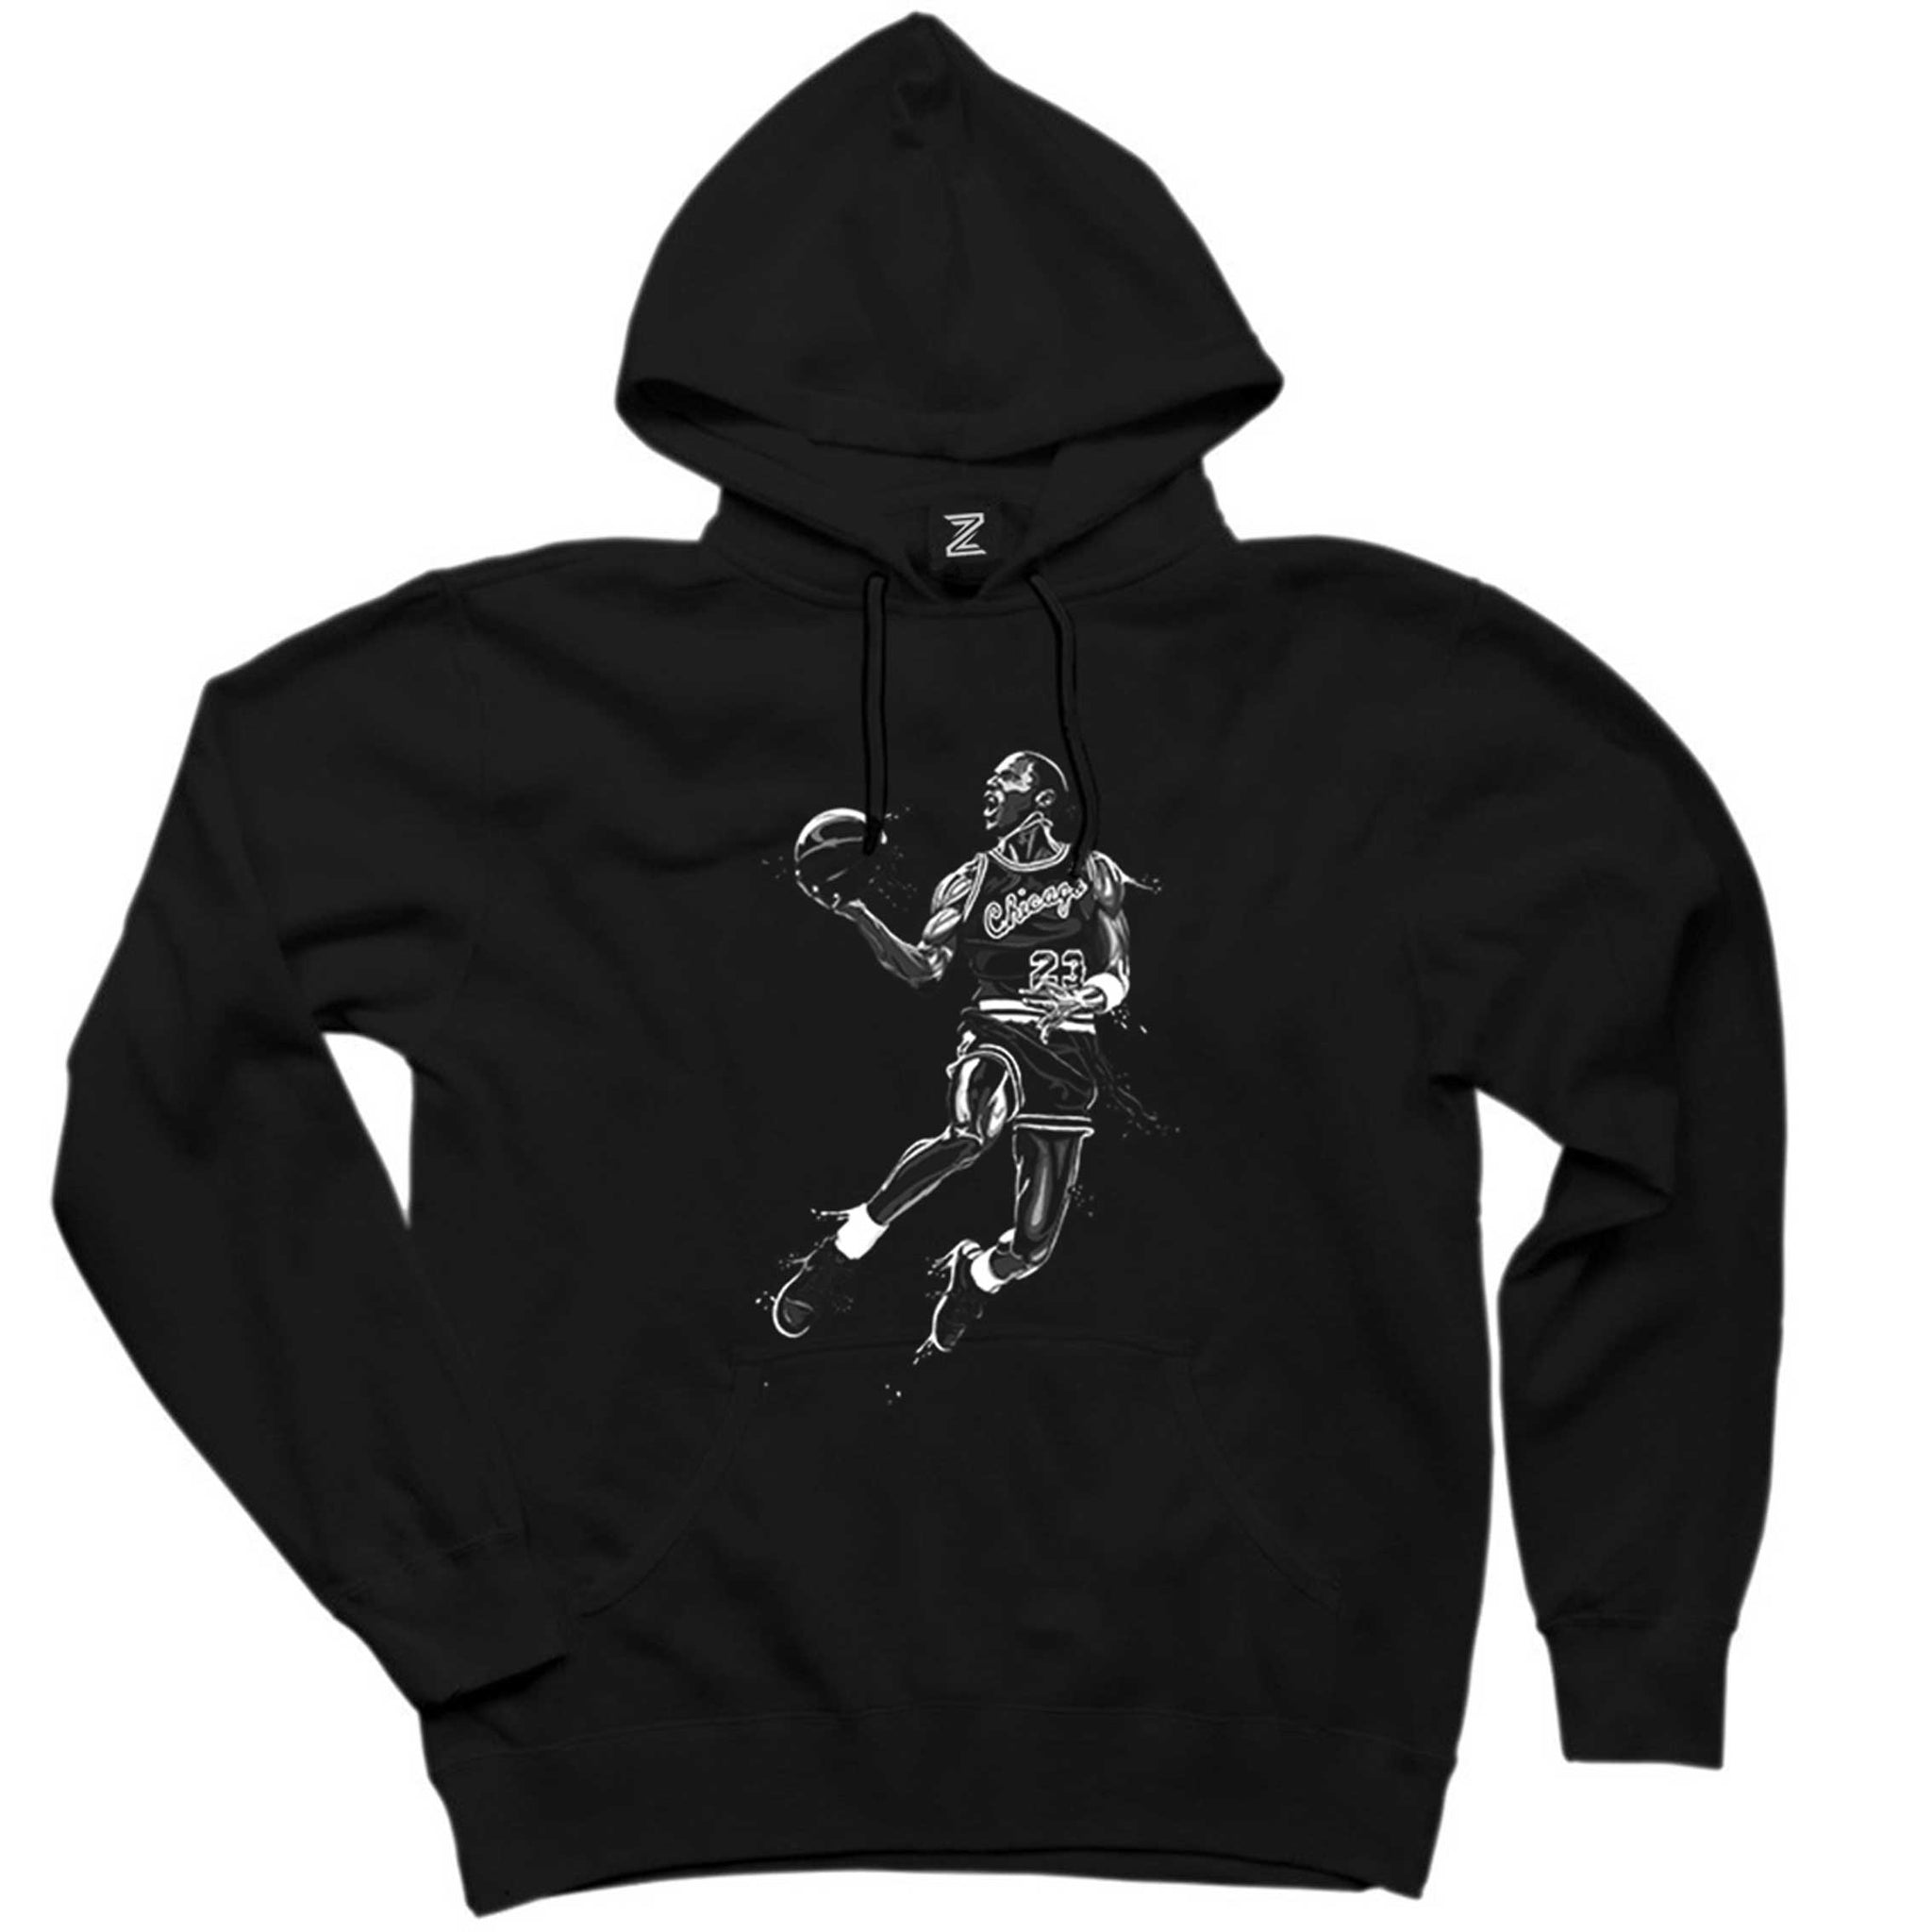 Michael Jordan Black Siyah Kapşonlu Sweatshirt Hoodie